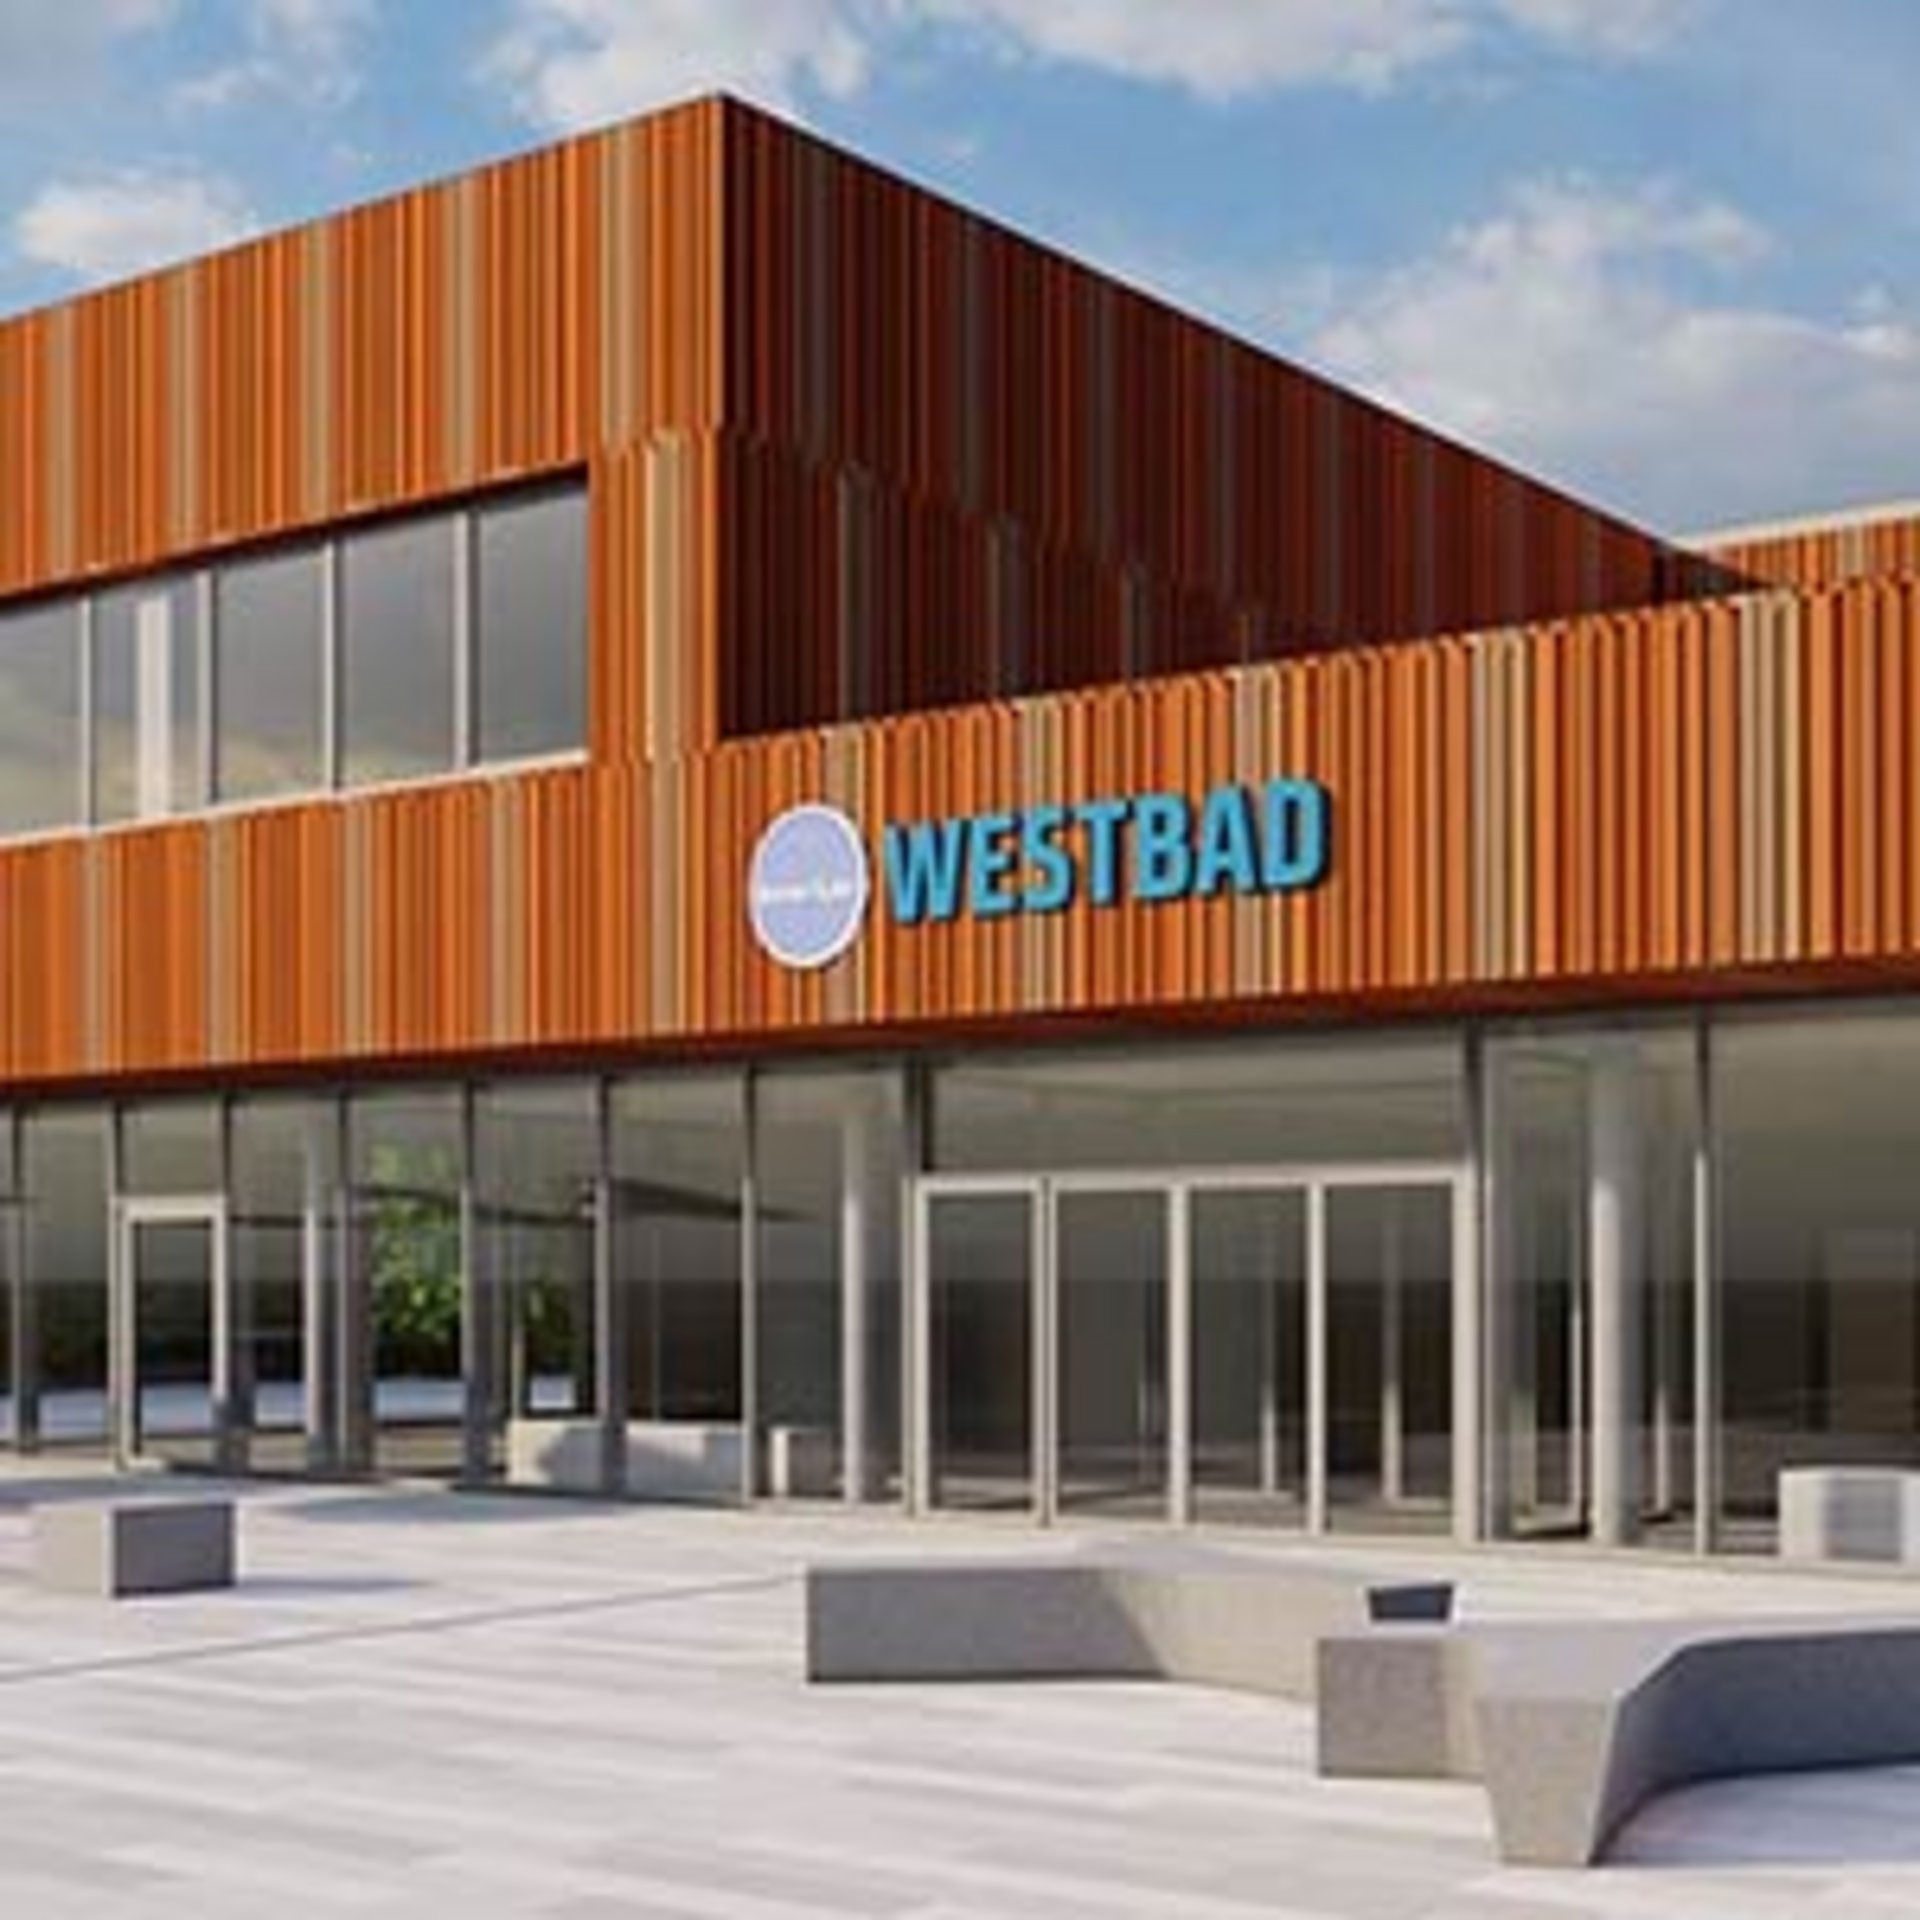 Westbad - Visualisierung der Baupläne